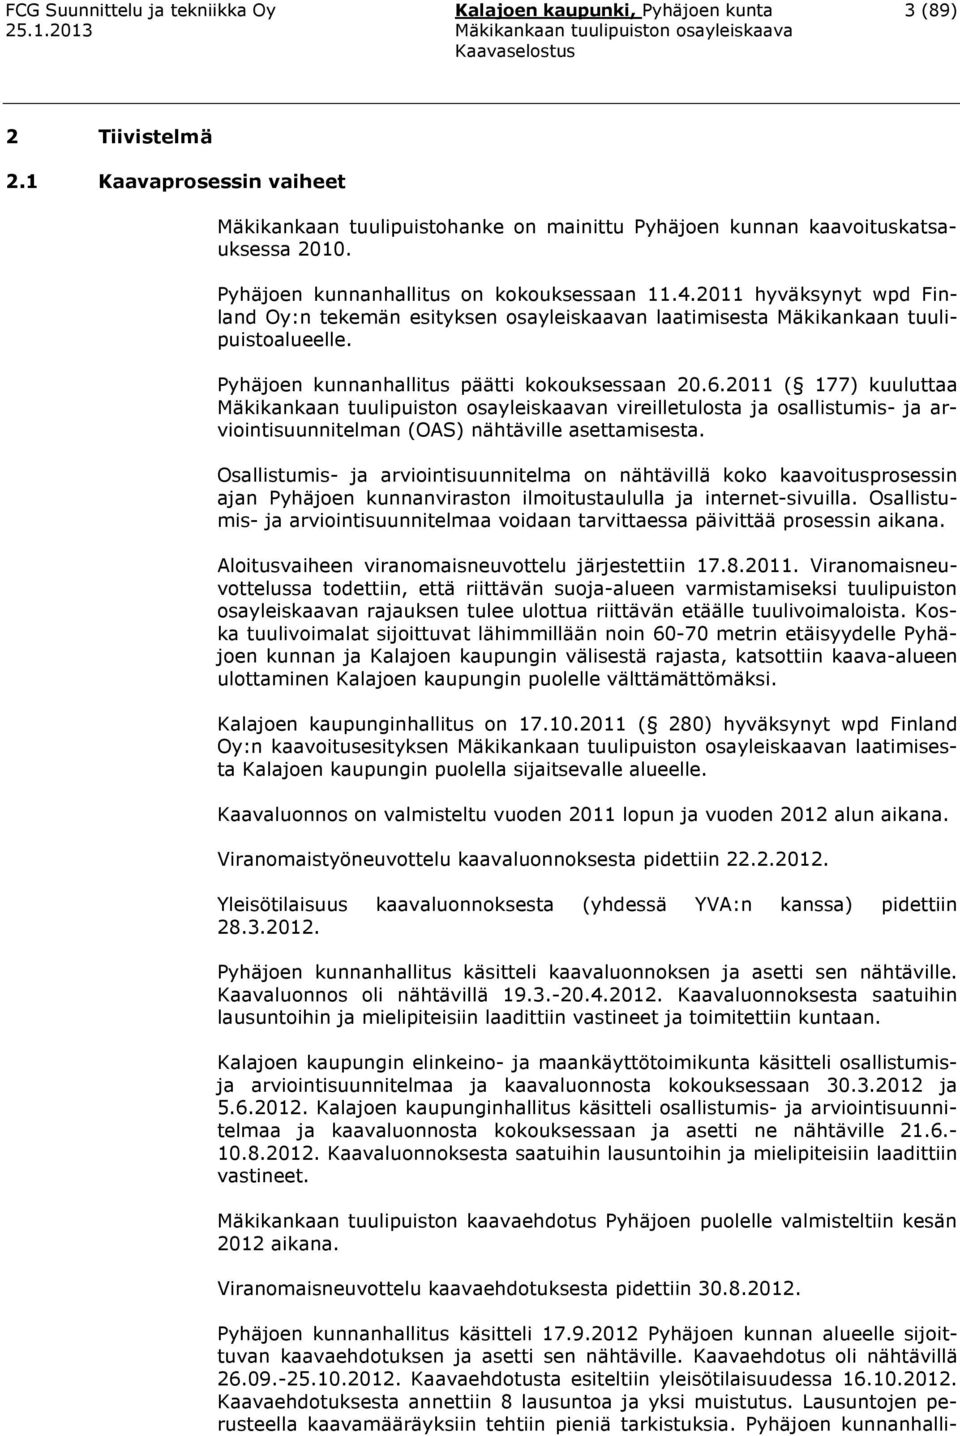 Pyhäjoen kunnanhallitus päätti kokouksessaan 20.6.